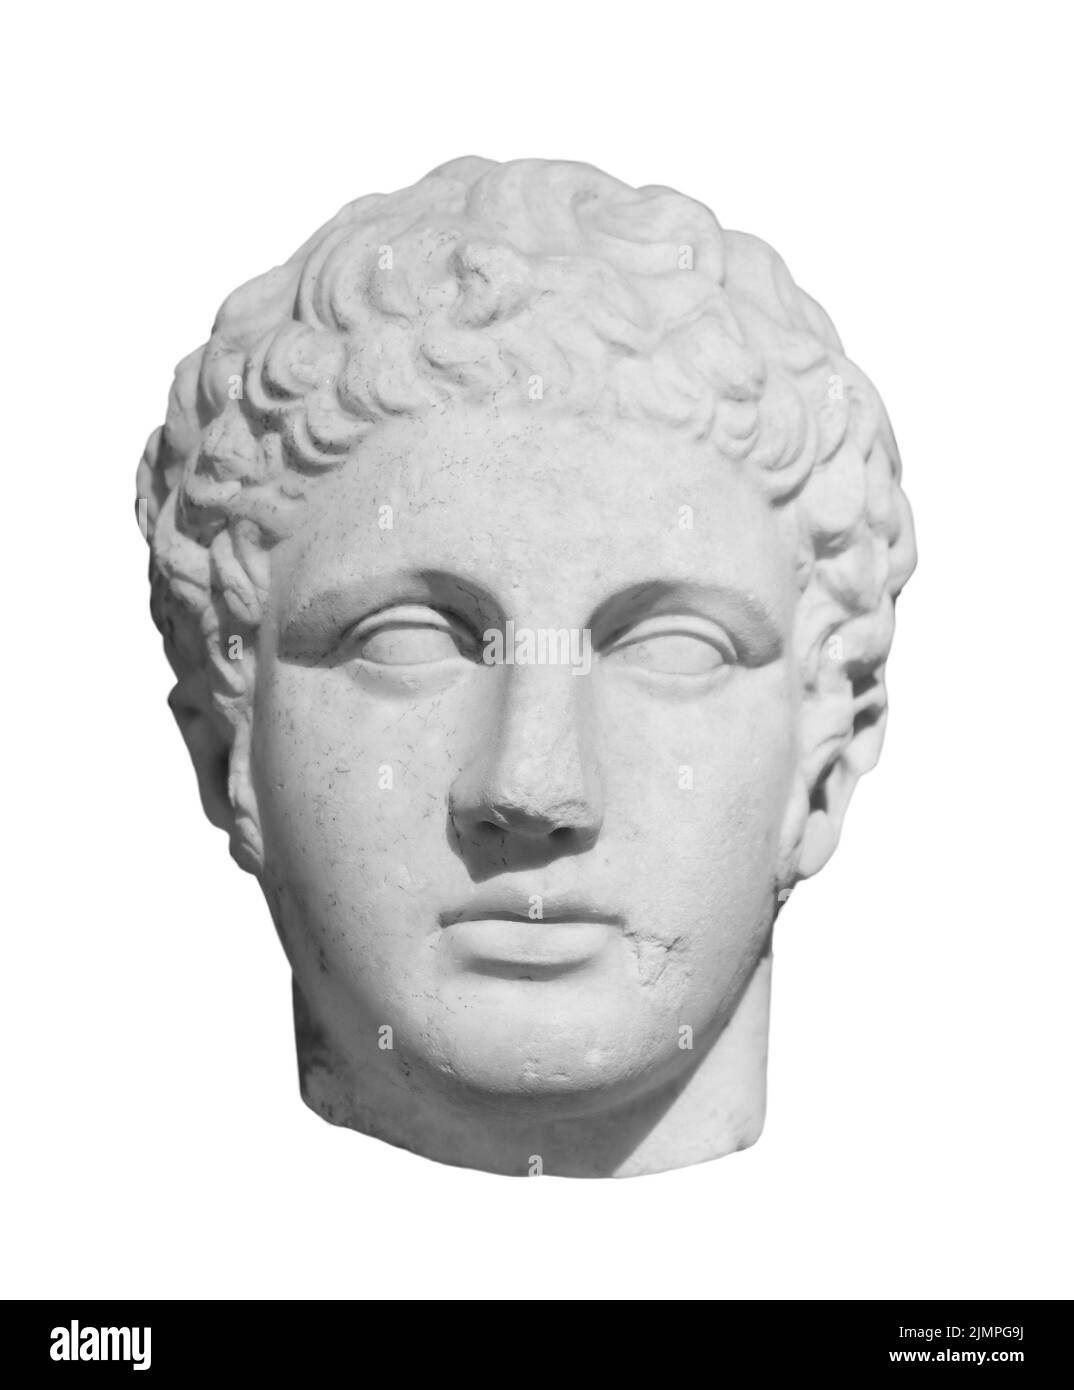 Alte Statue des antiken gottes des Handels, Kaufleute und Reisende Hermes - Merkur. Kopf Skulptur isoliert auf weißem Hintergrund Stockfoto